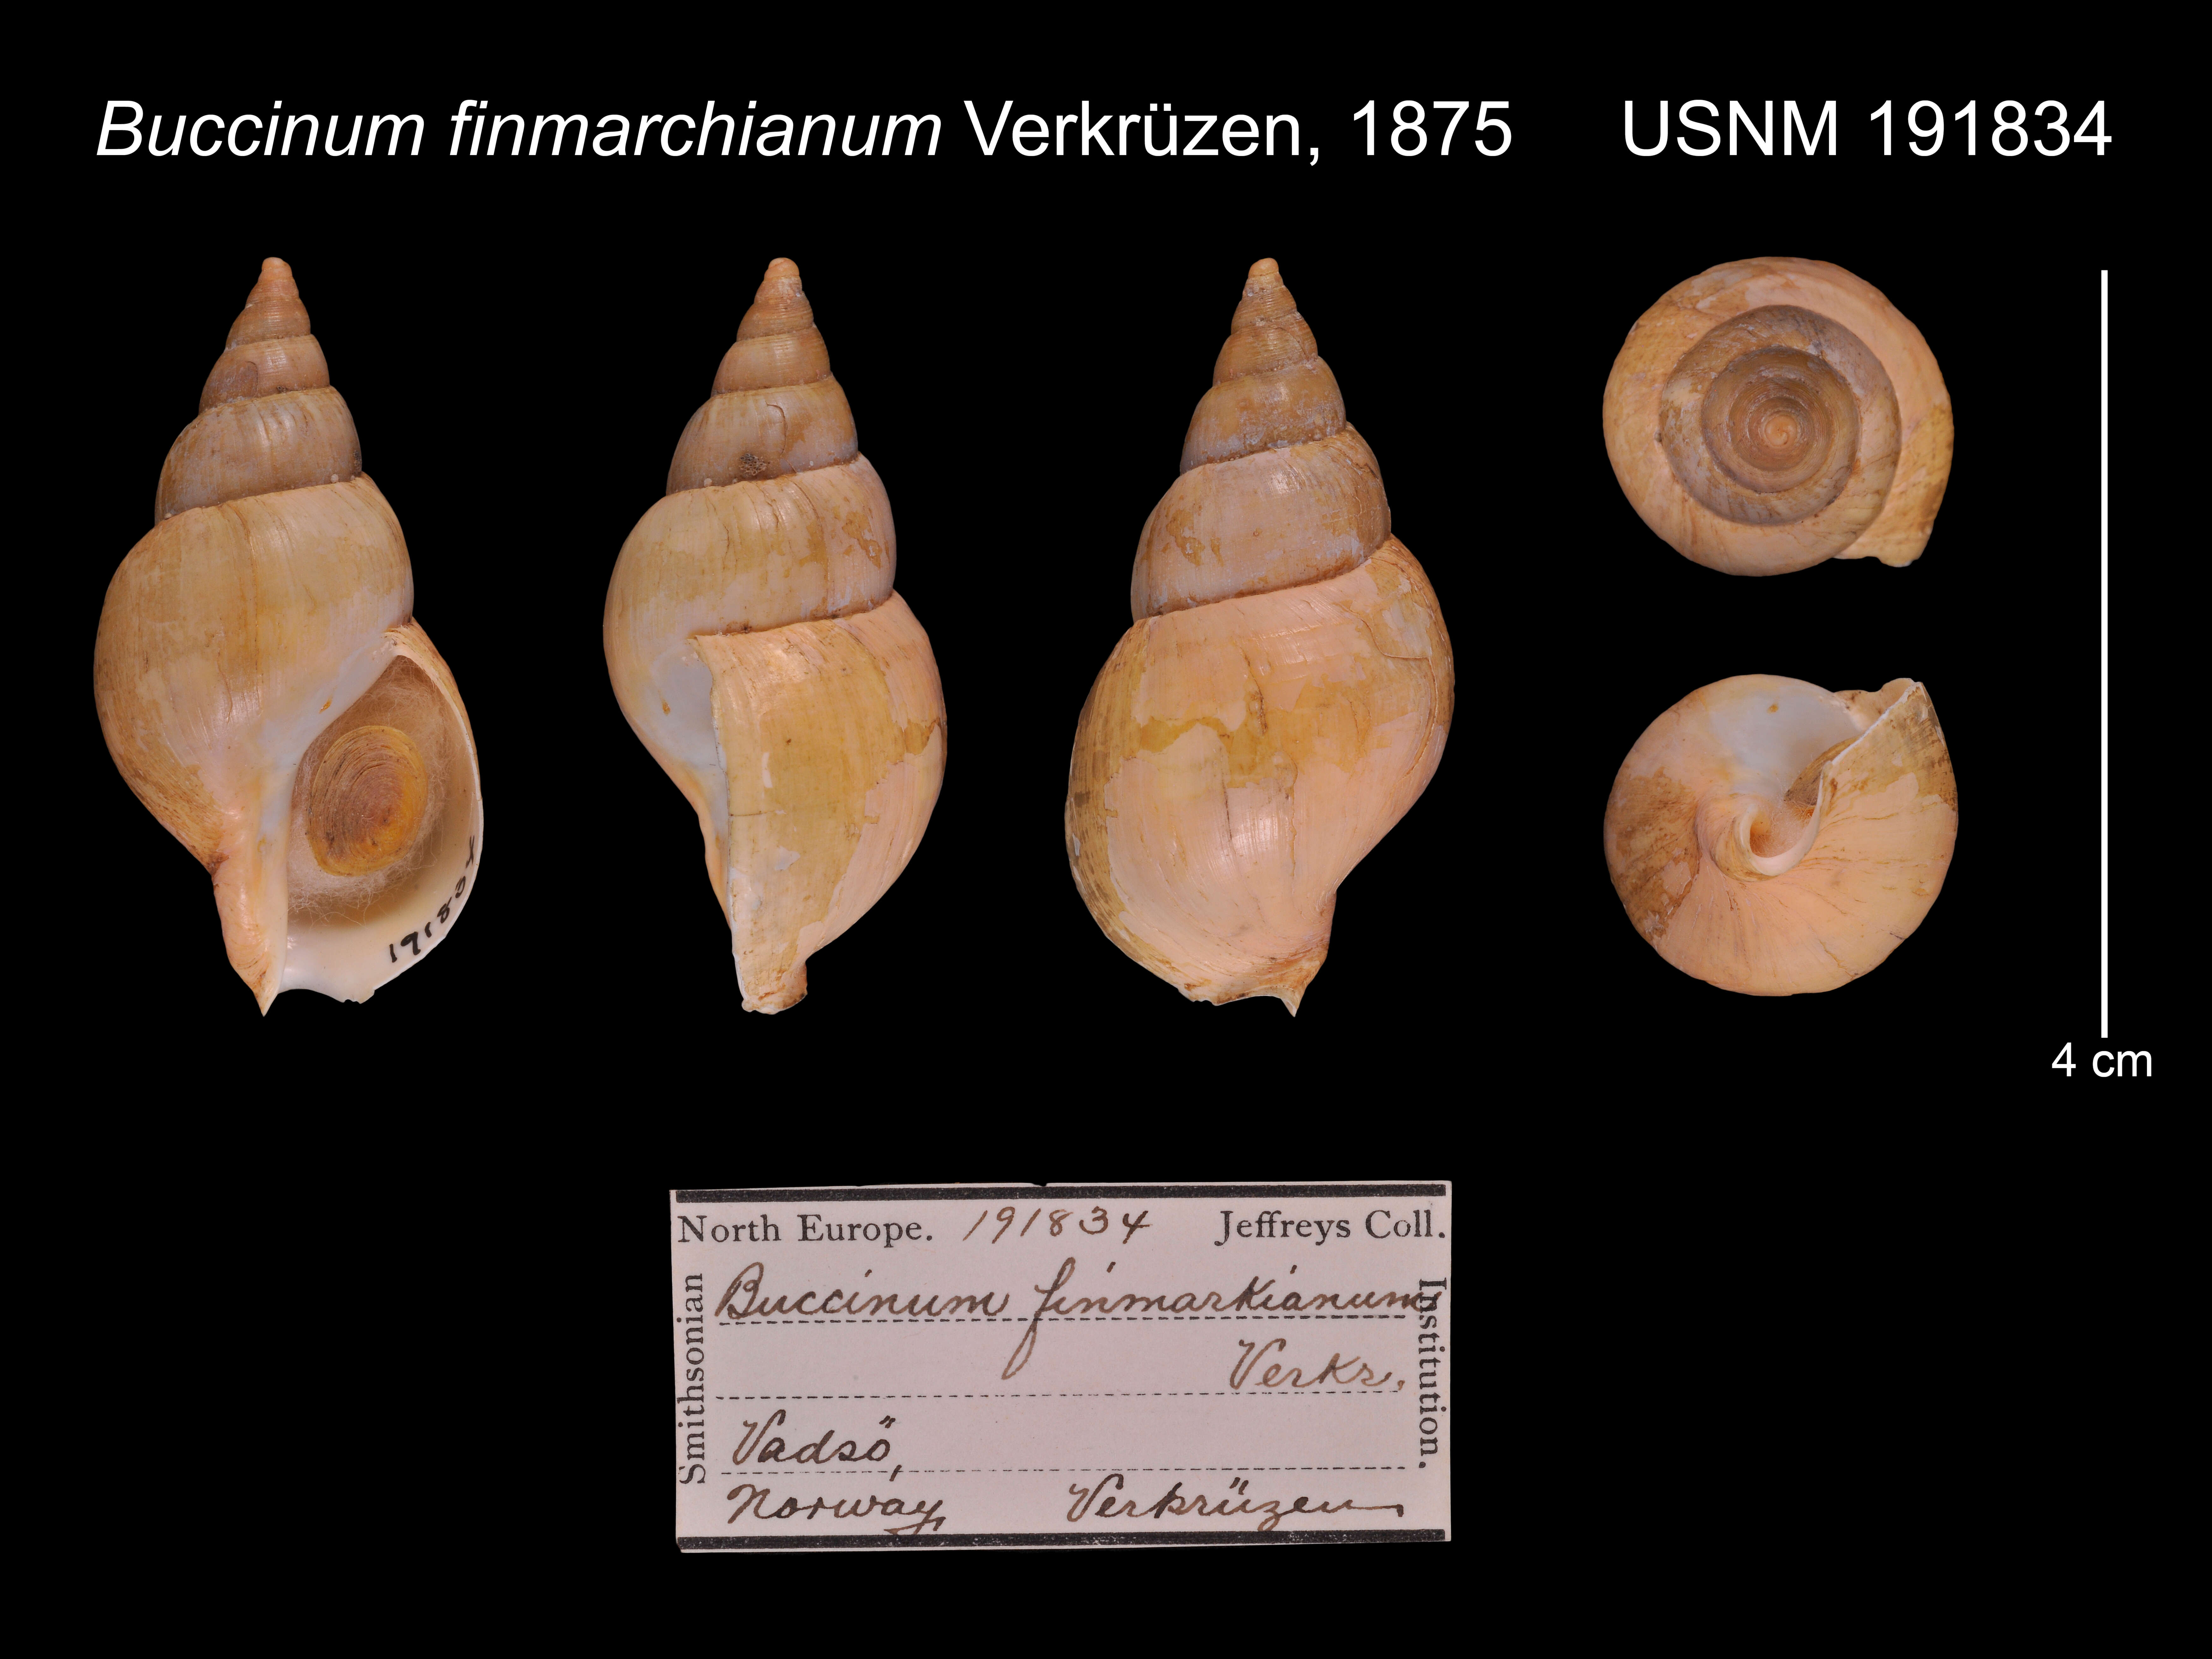 Image of Buccinum finmarkianum Verkrüzen 1875